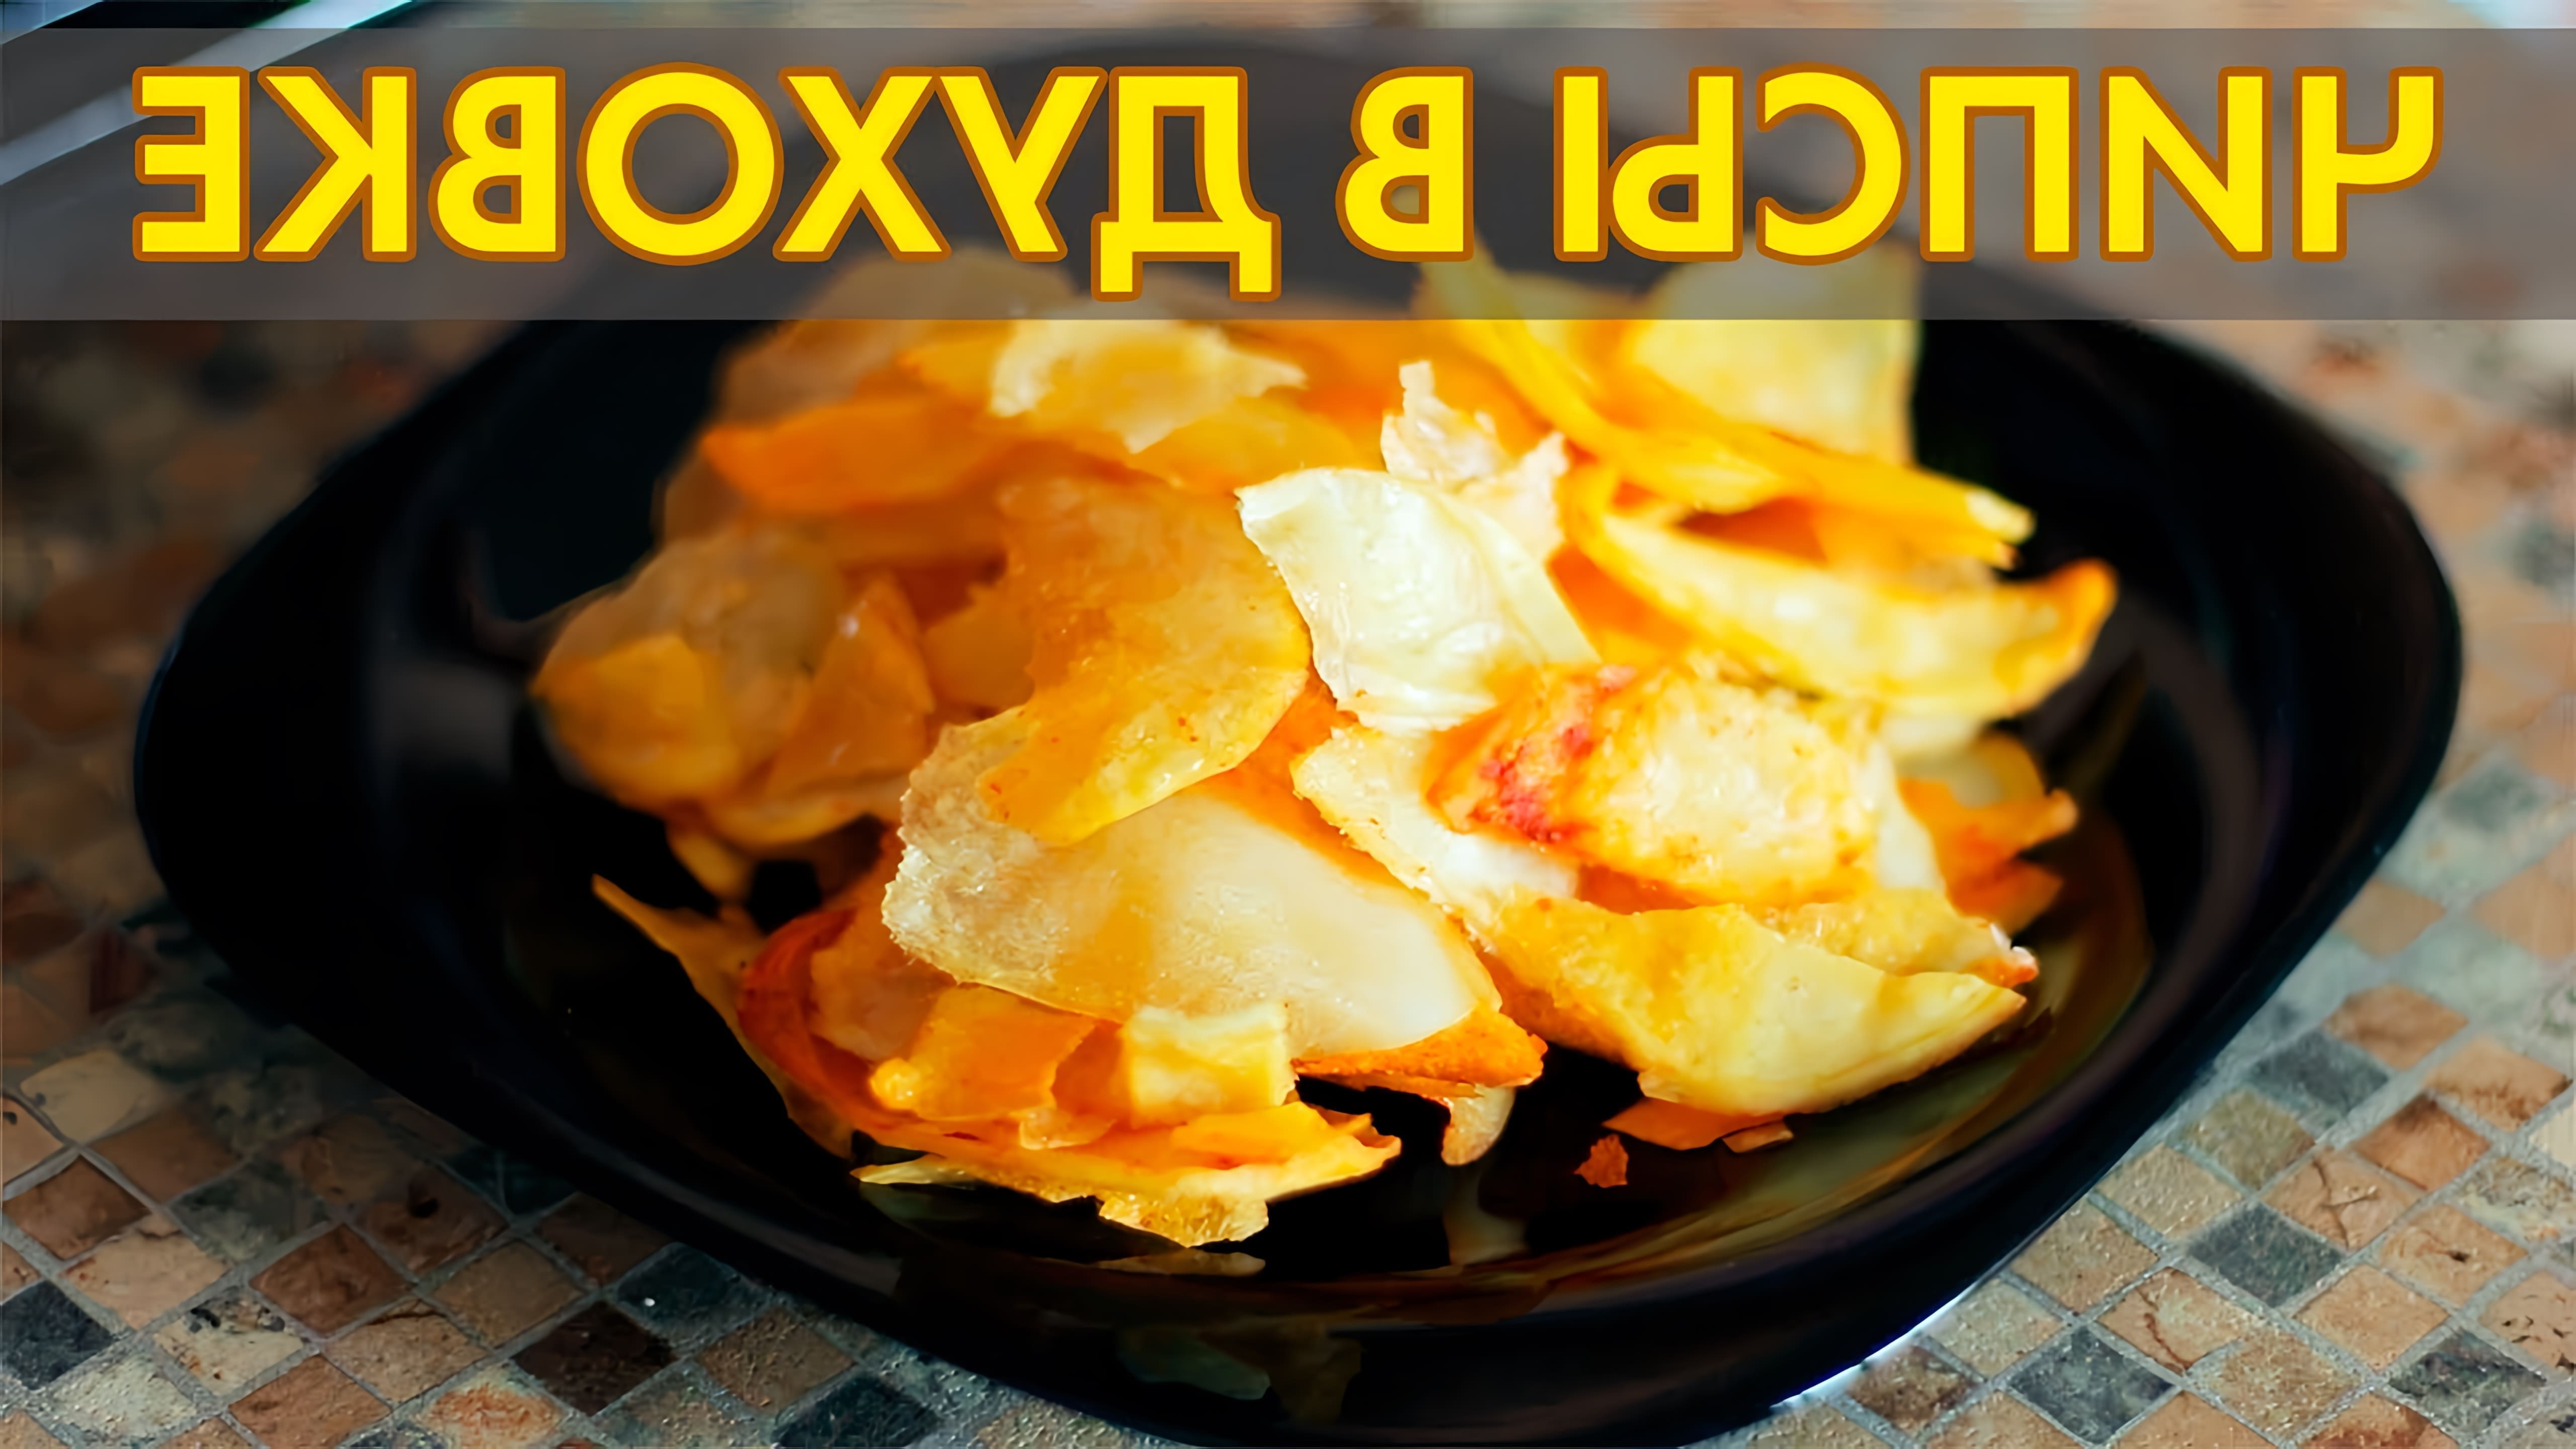 В этом видео рассказывается о том, как приготовить картофельные чипсы в домашних условиях в духовке